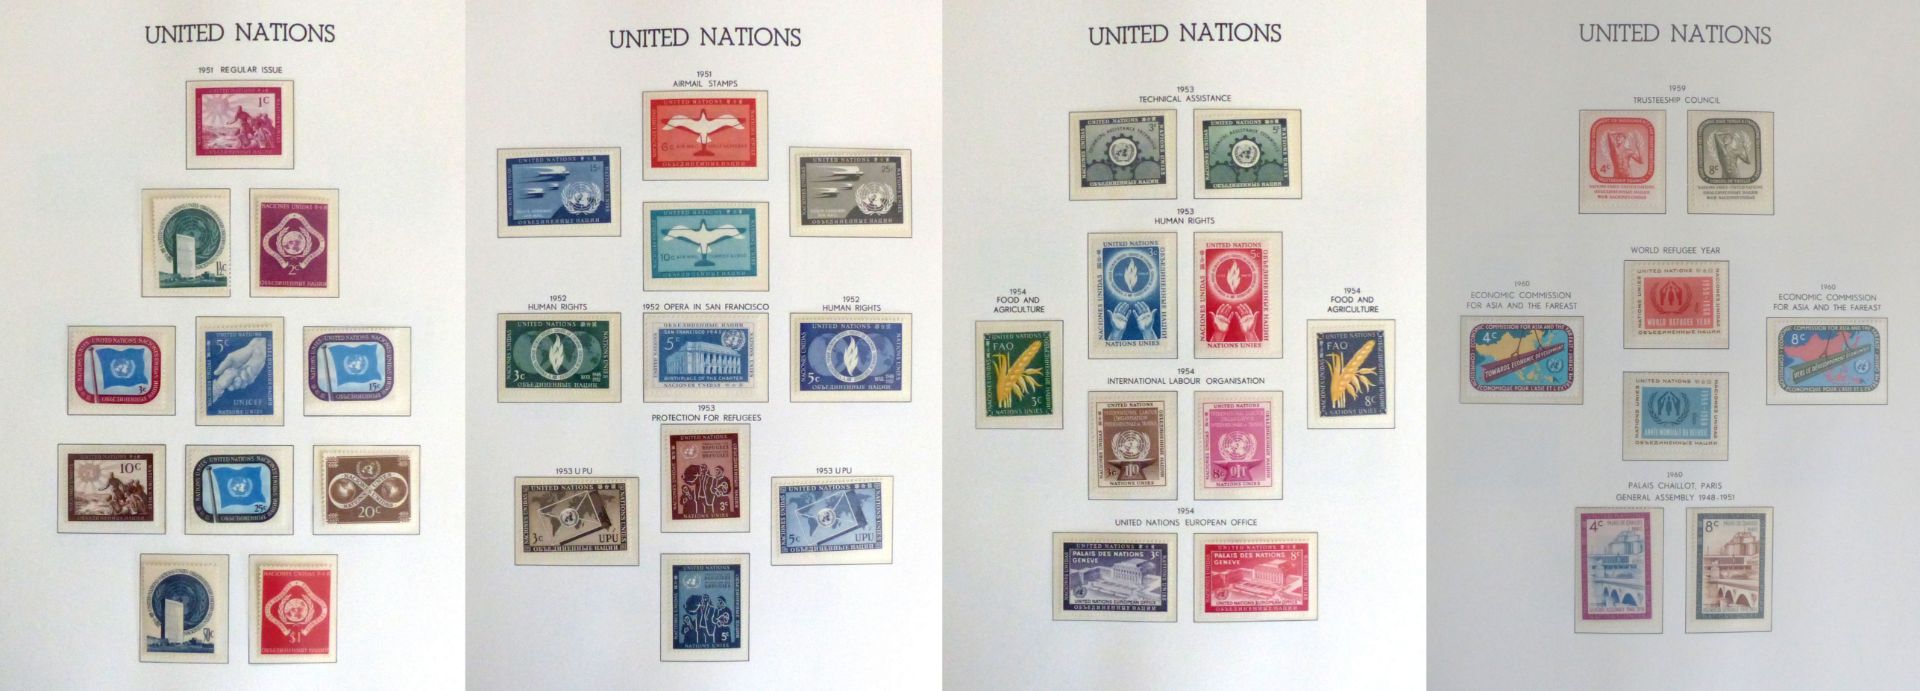 UNO New York 1951-1990 kpl. im Leuchtturm-Vordruck-Klemmbinder postfrisch** mit KB, Flaggen, usw.